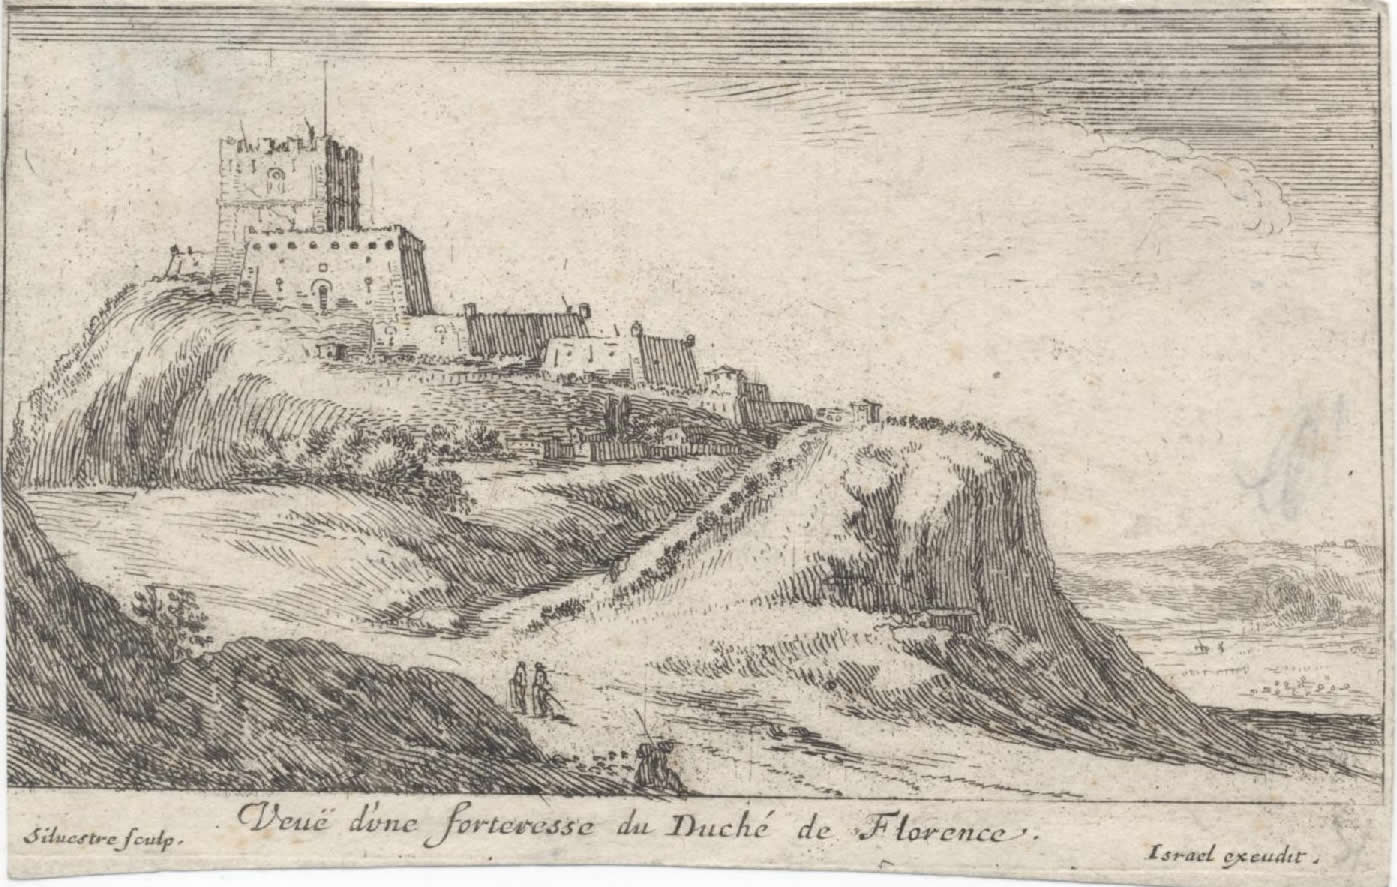 Israël Silvestre : Veuë d'une forteresse du Duché de Florence.